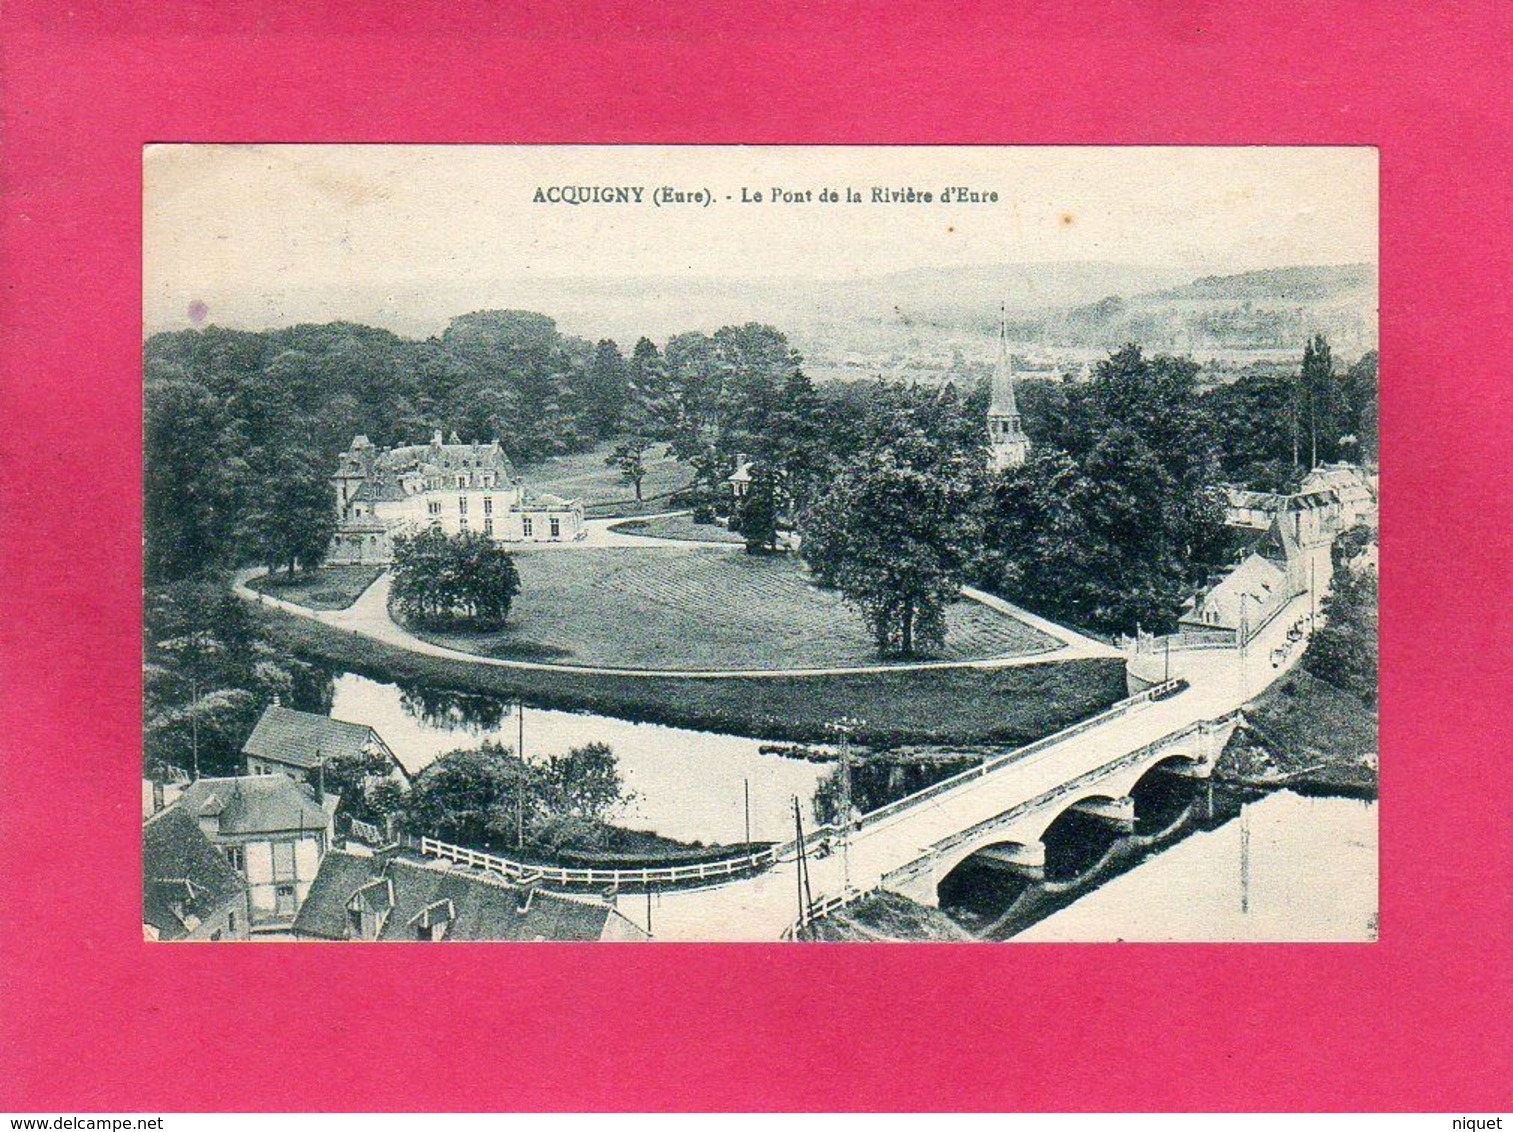 27 Eure, ACQUIGNY, Le Pont De La Rivière D'Eure, Animée, 1931, (Desaix) - Acquigny